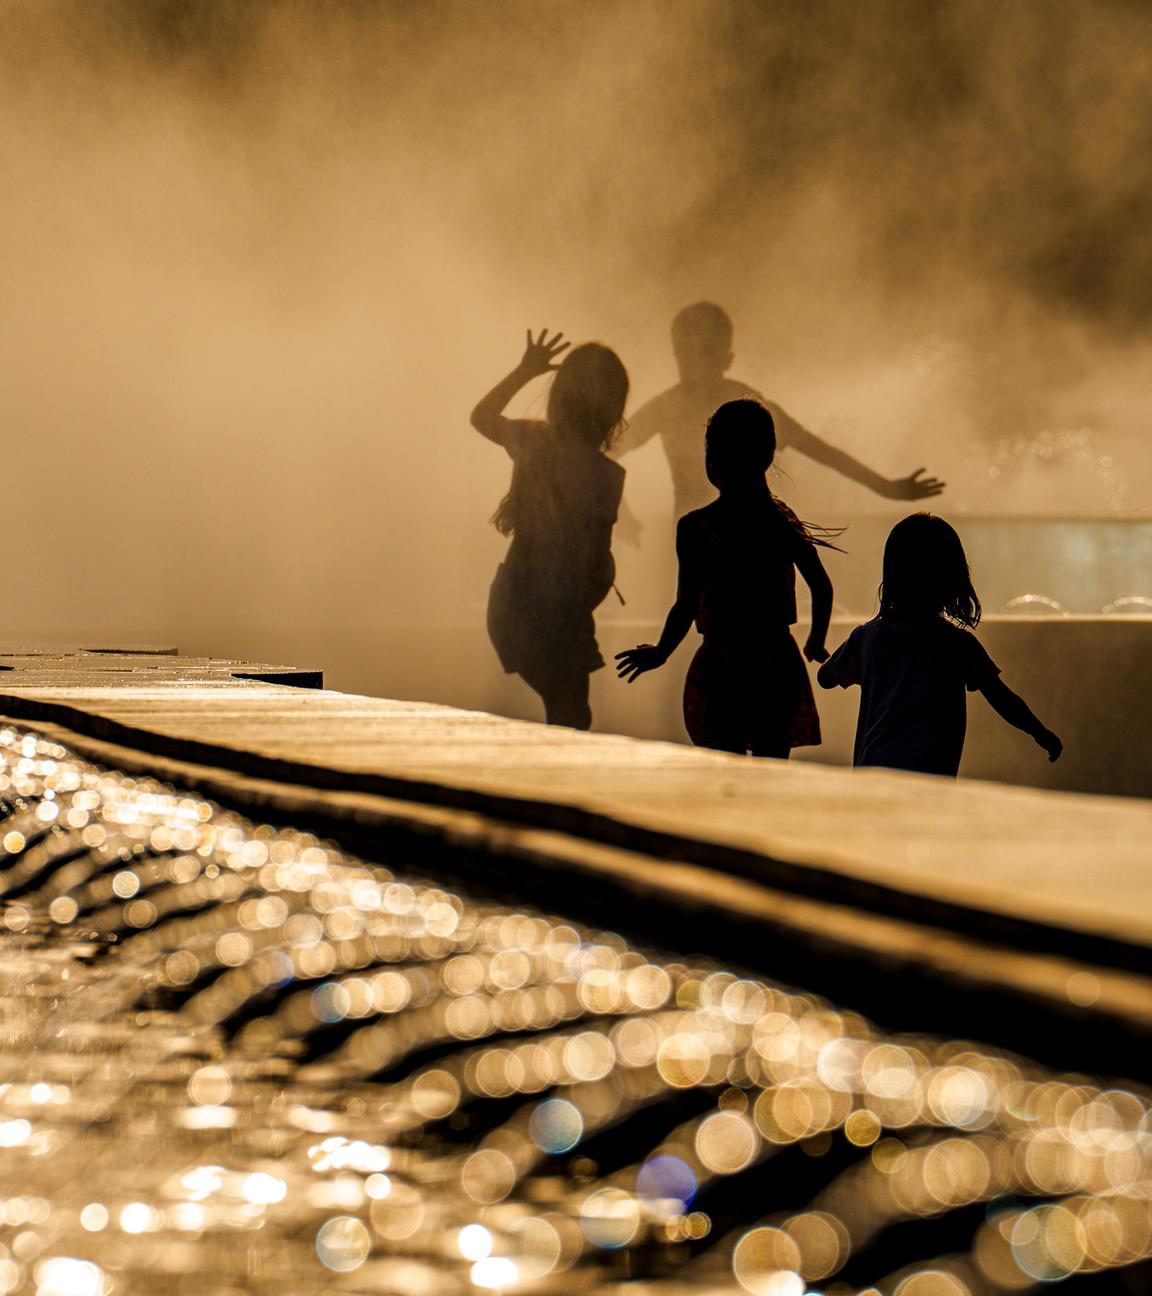 Rumänien, Bukarest: Kinder genießen das Wasser aus einem öffentlichen Brunnen vor Sonnenuntergang, als die Temperaturen 38 Grad Celsius überschritten hatten.